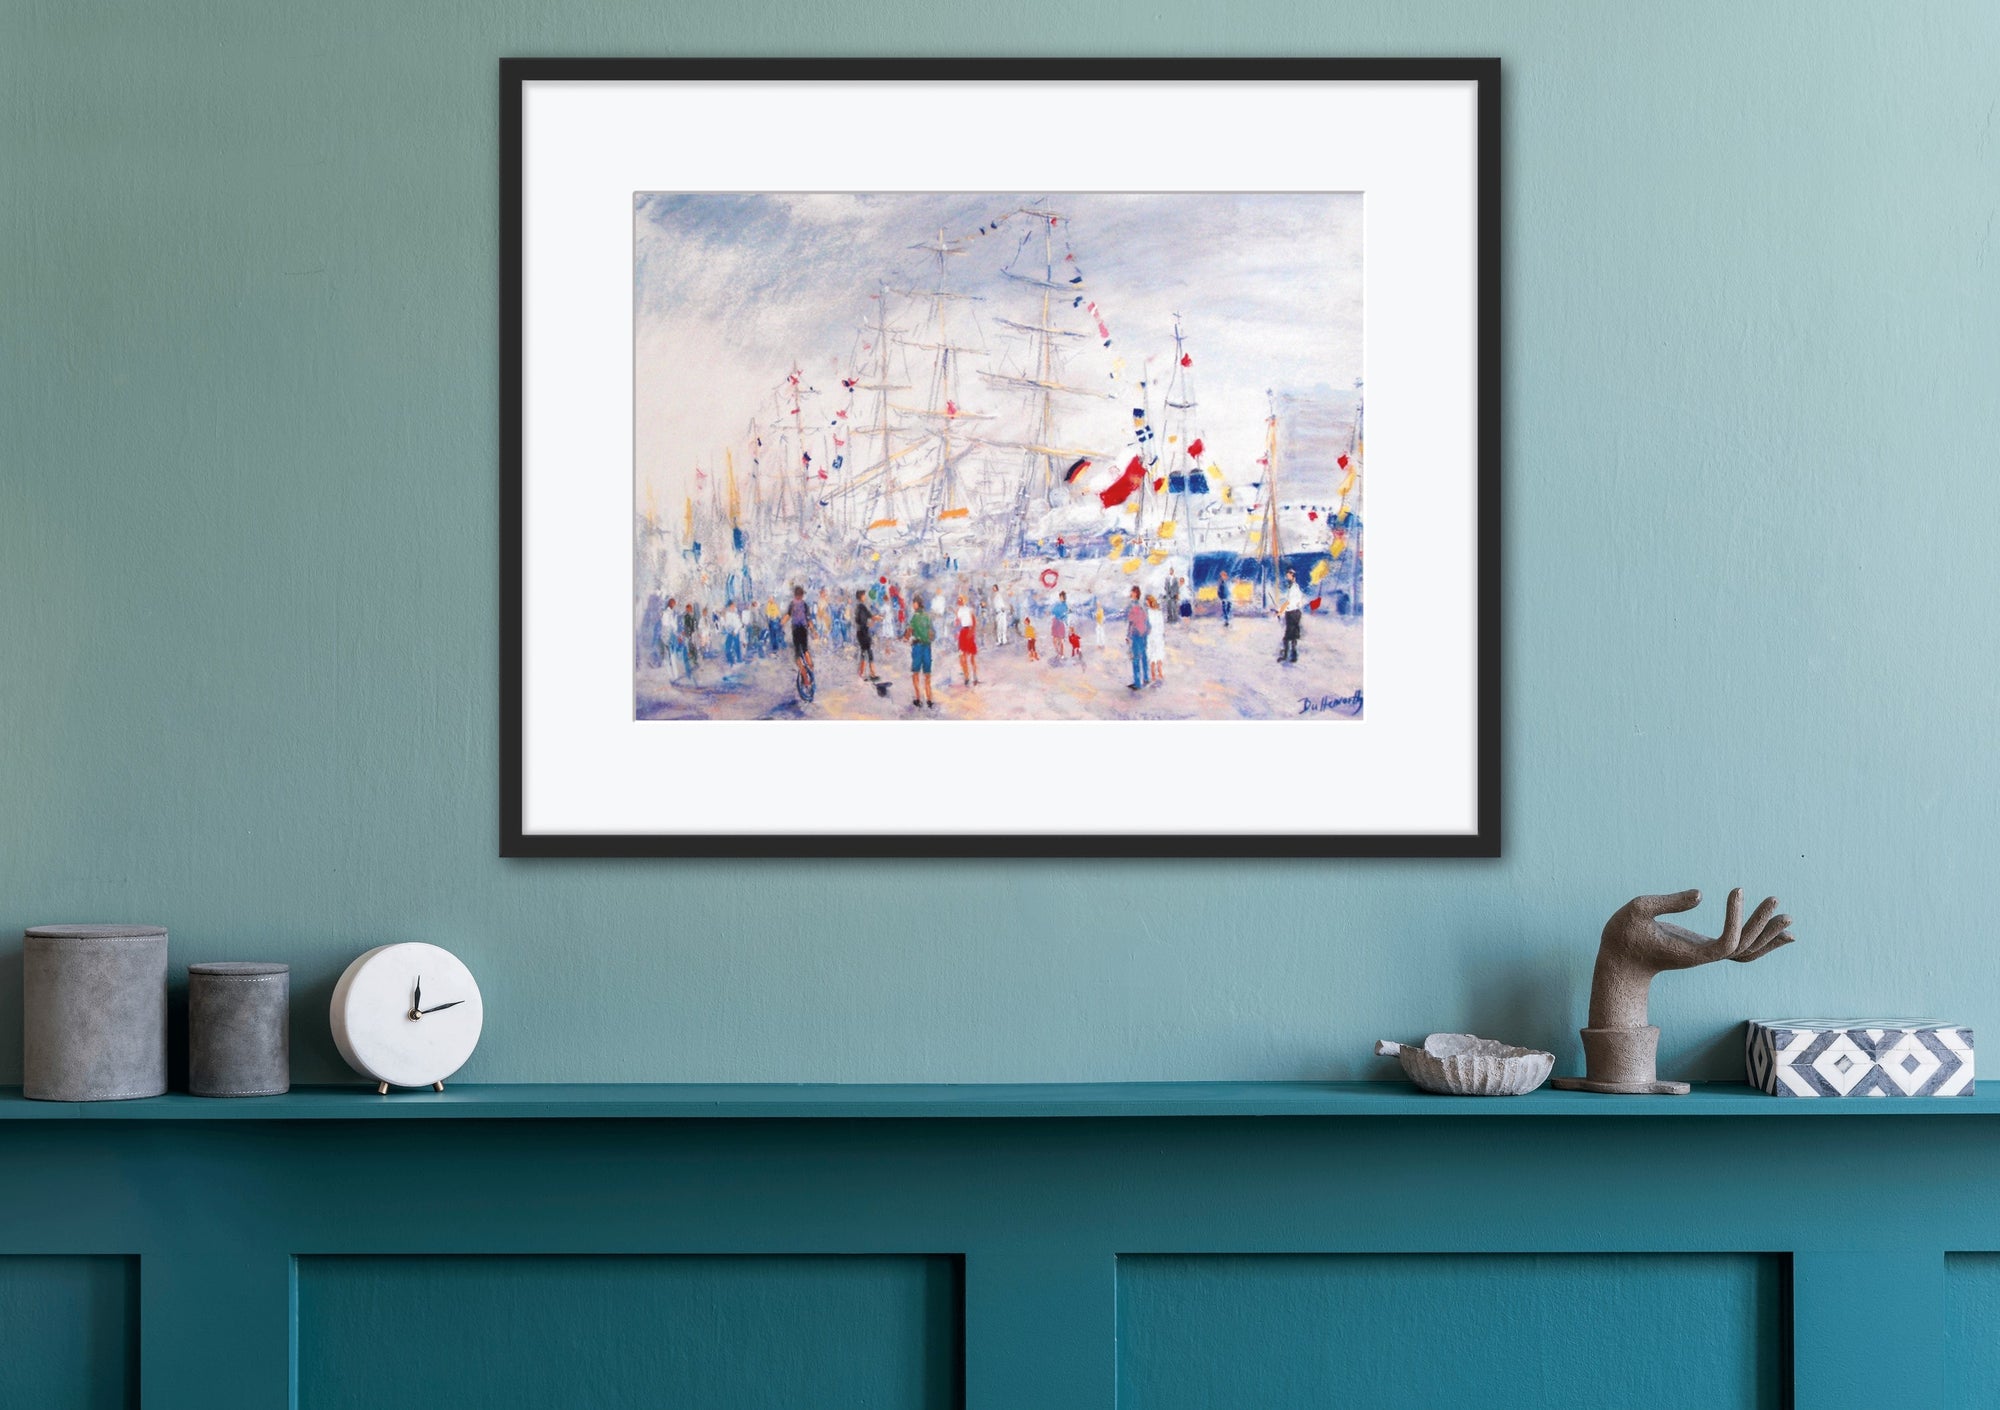 "Aberdeen Welcomes the Tall Ships" - Fine Art Print of Aberdeen